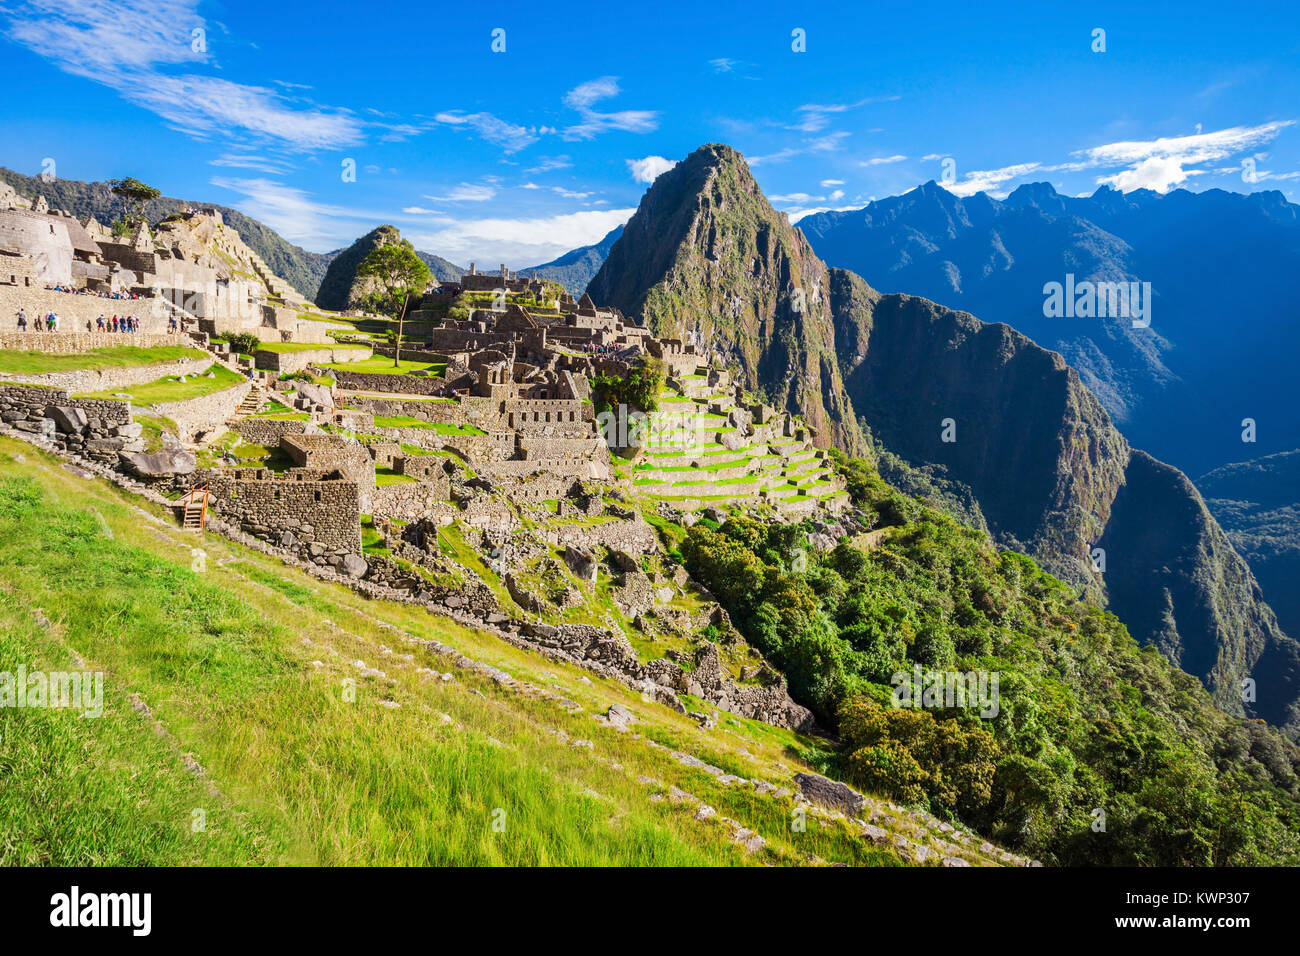 View of the Lost Incan City of Machu Picchu near Cusco, Peru. Stock Photo